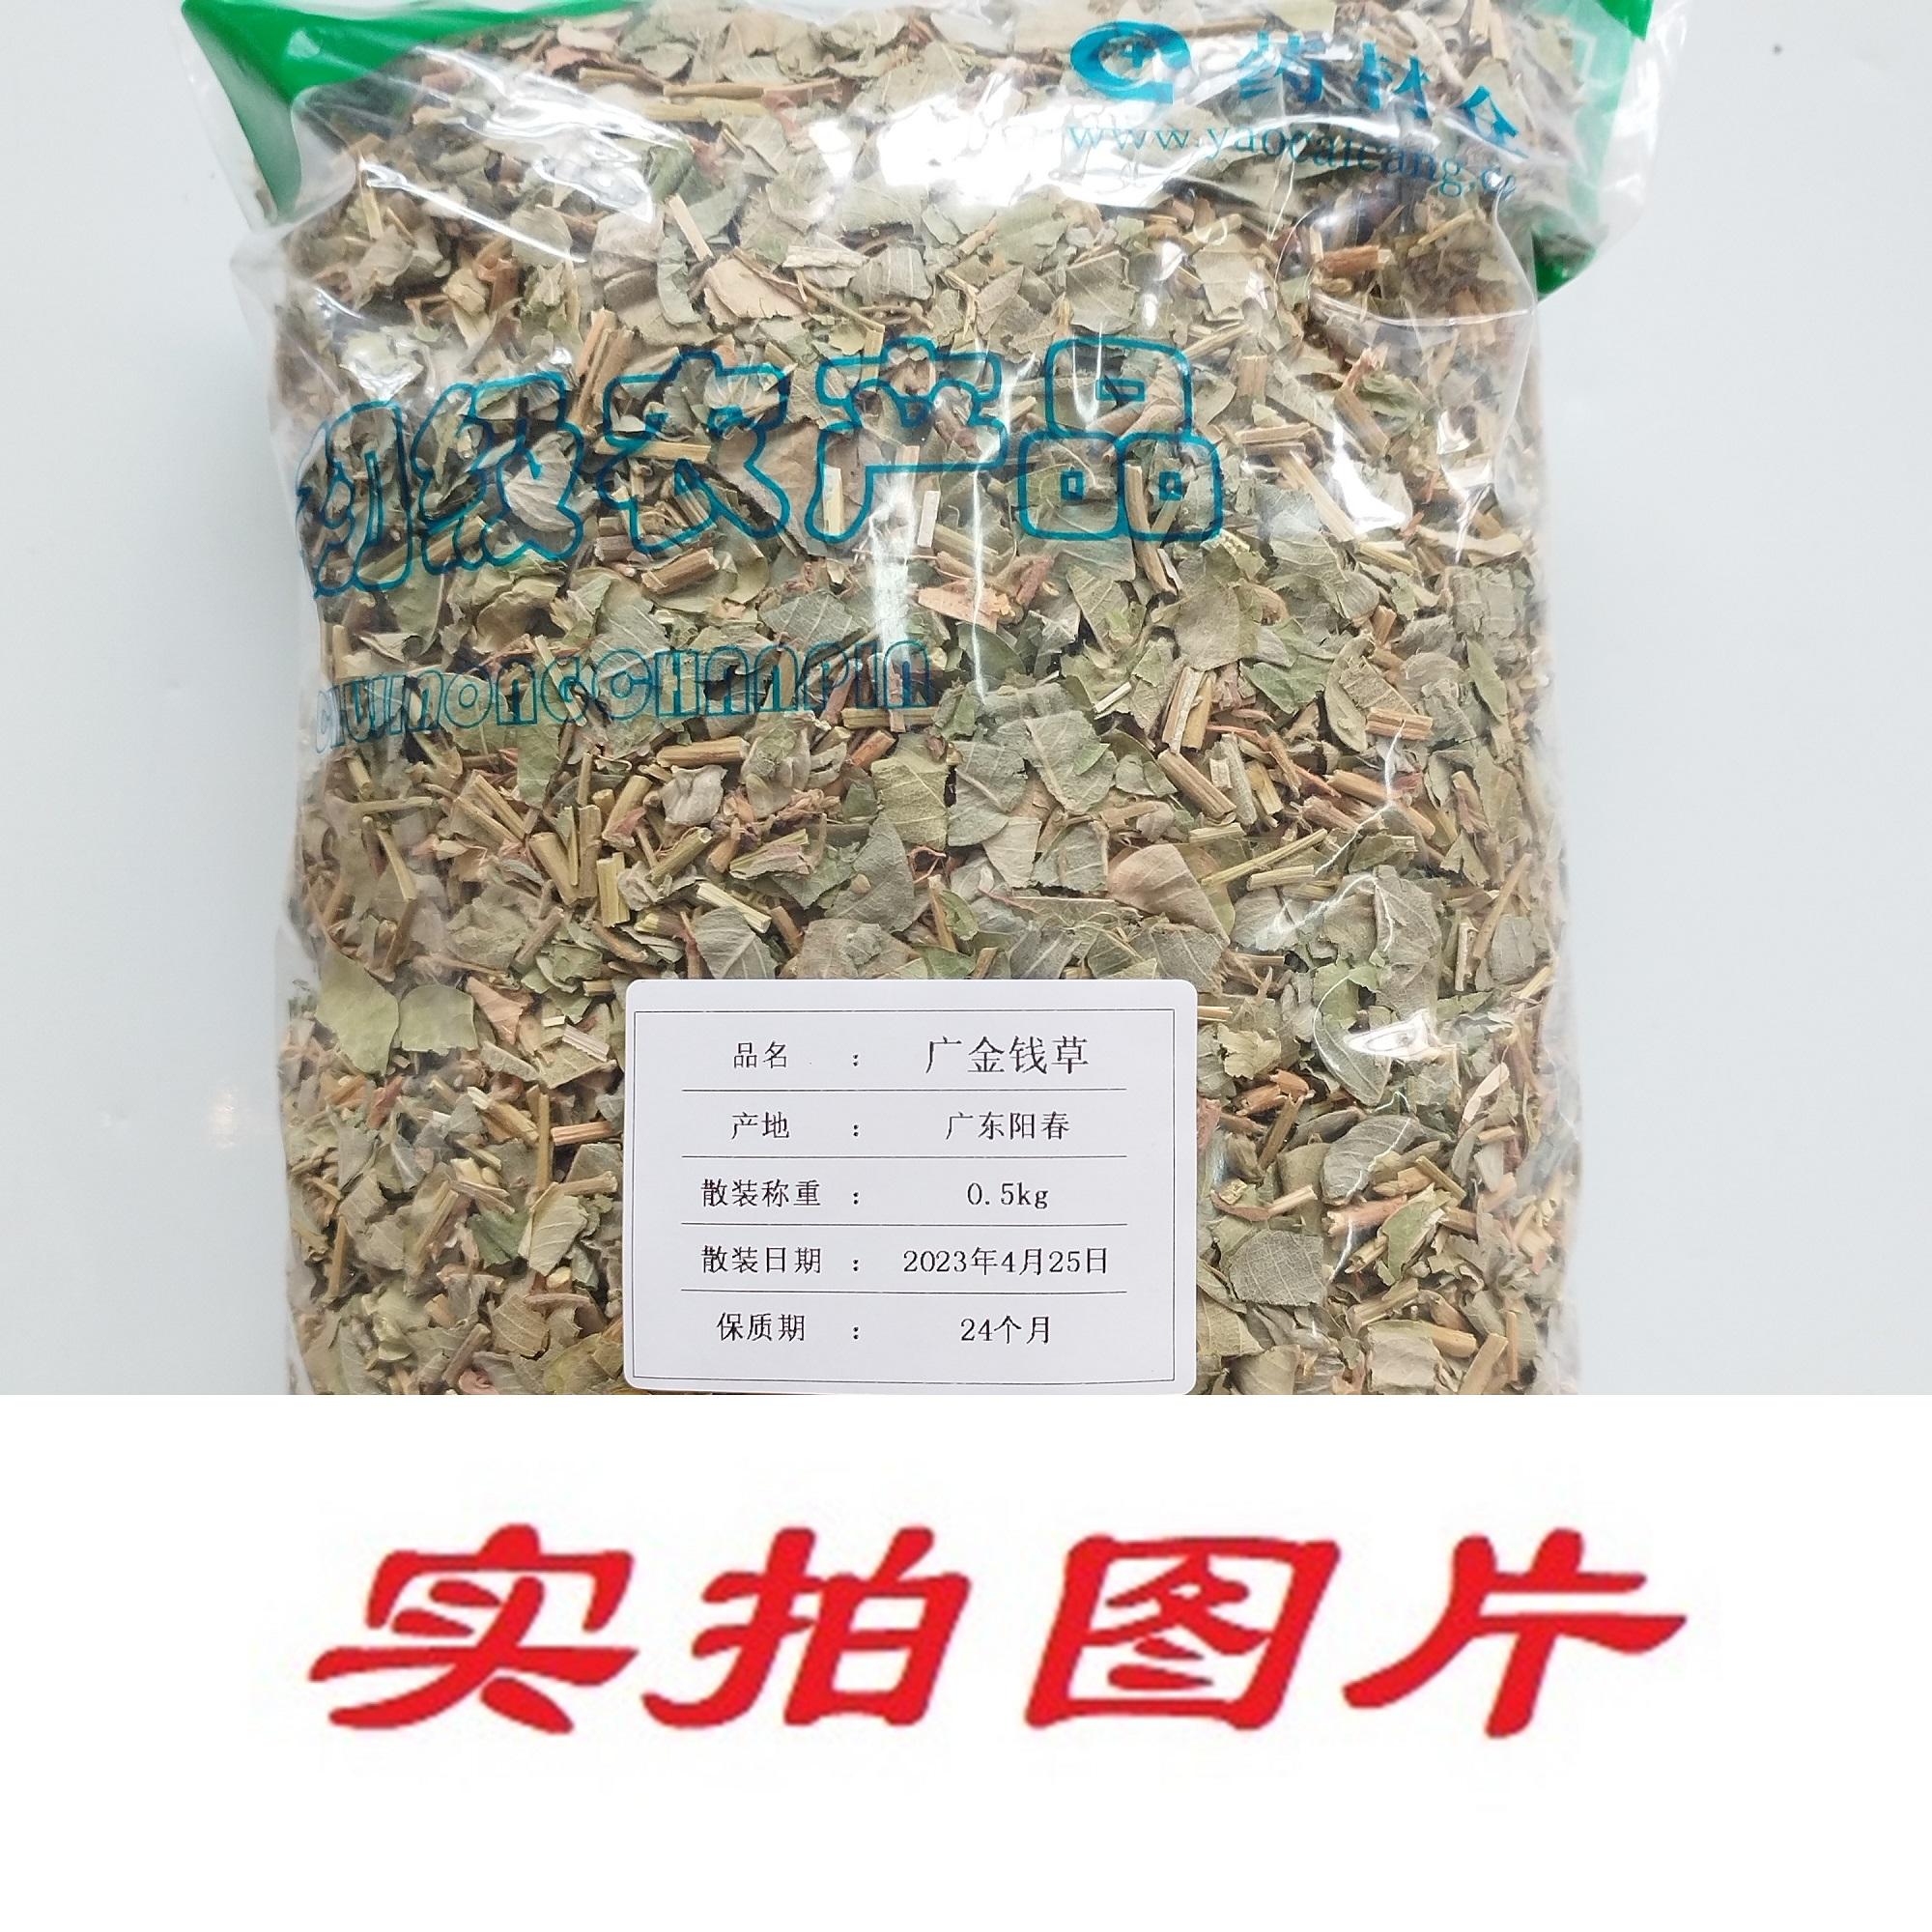 【】广金钱草0.5kg-农副产品